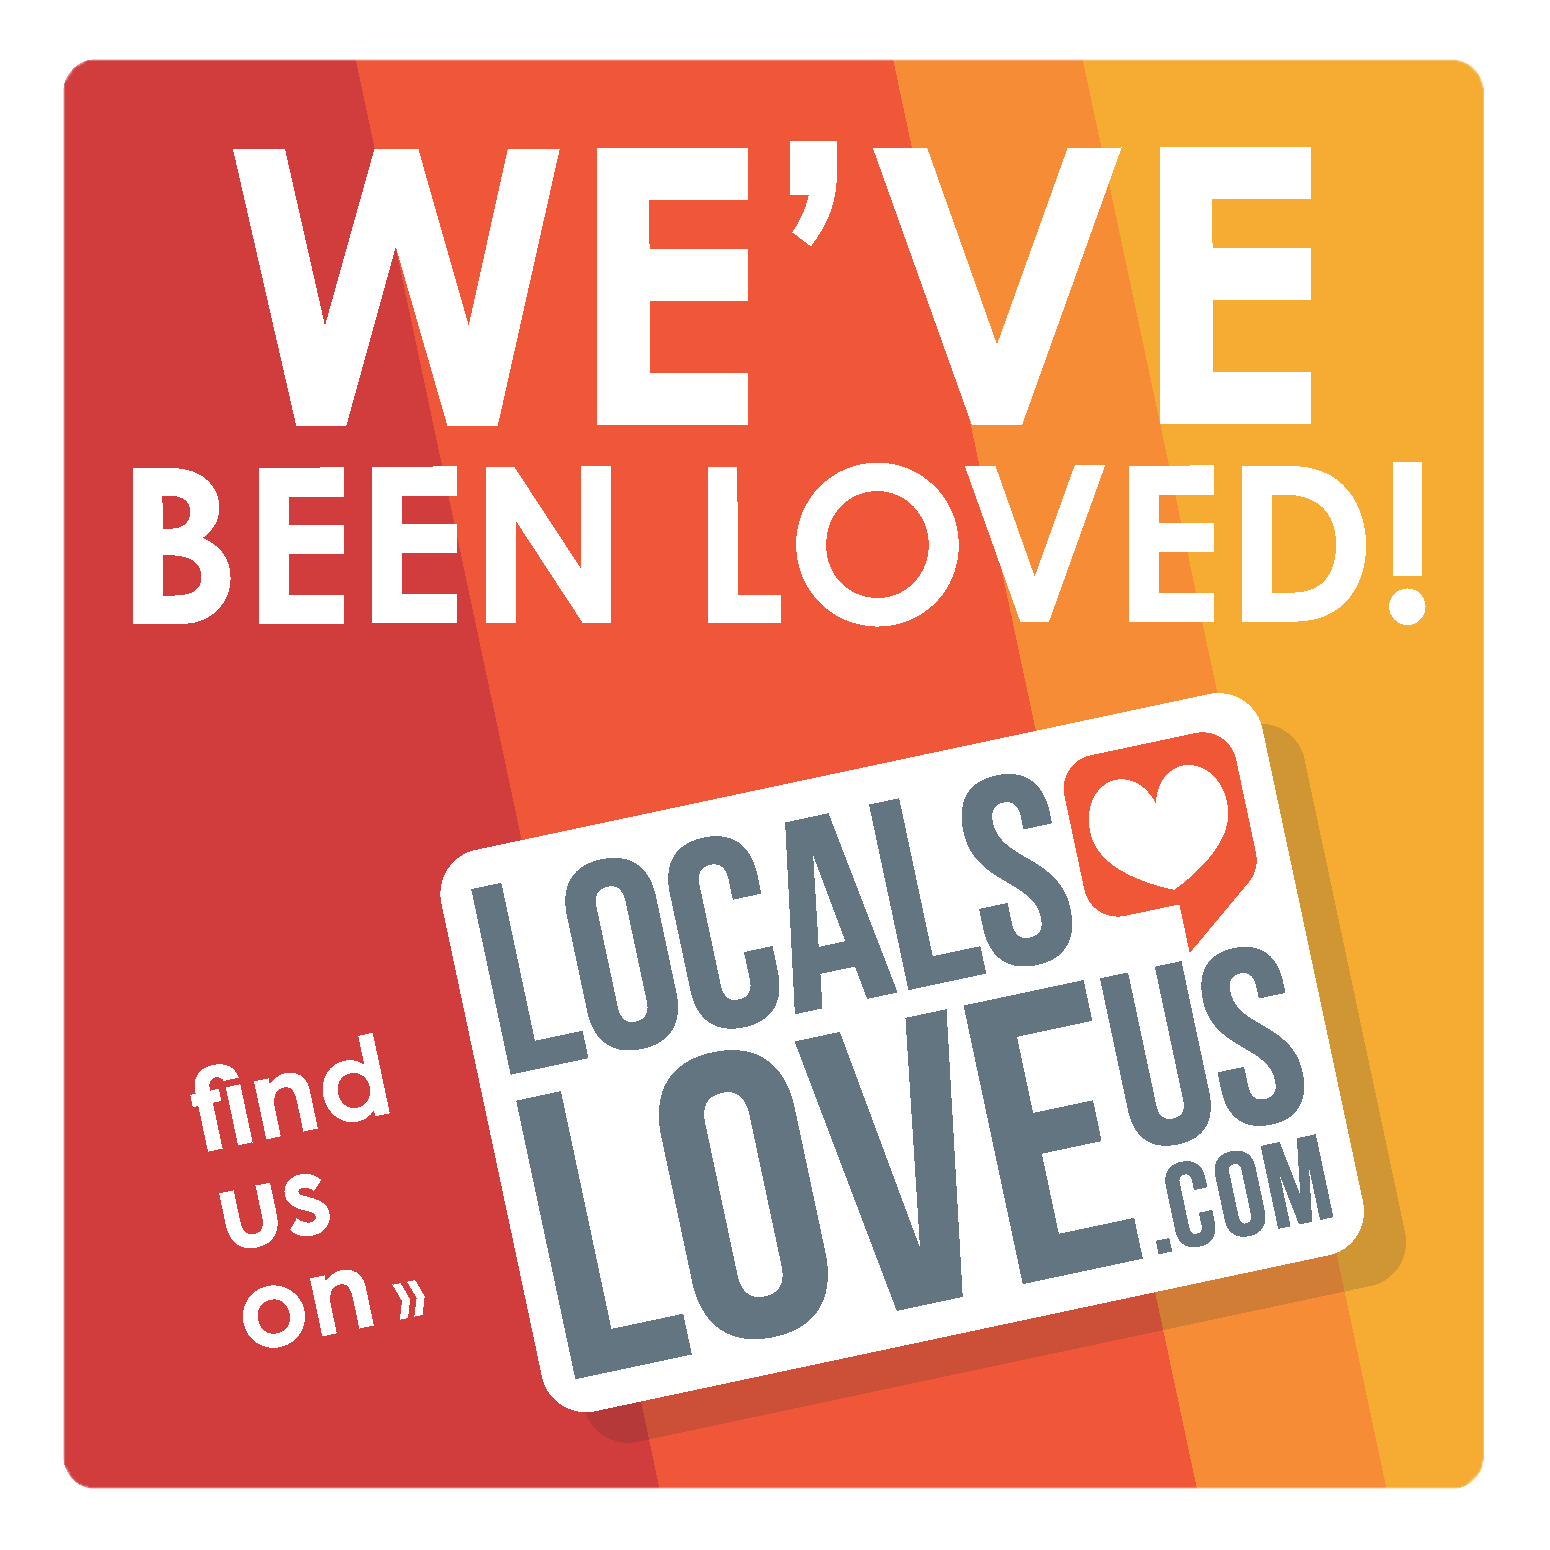 We've Been Loved! Find us on LocalsLoveUs.com